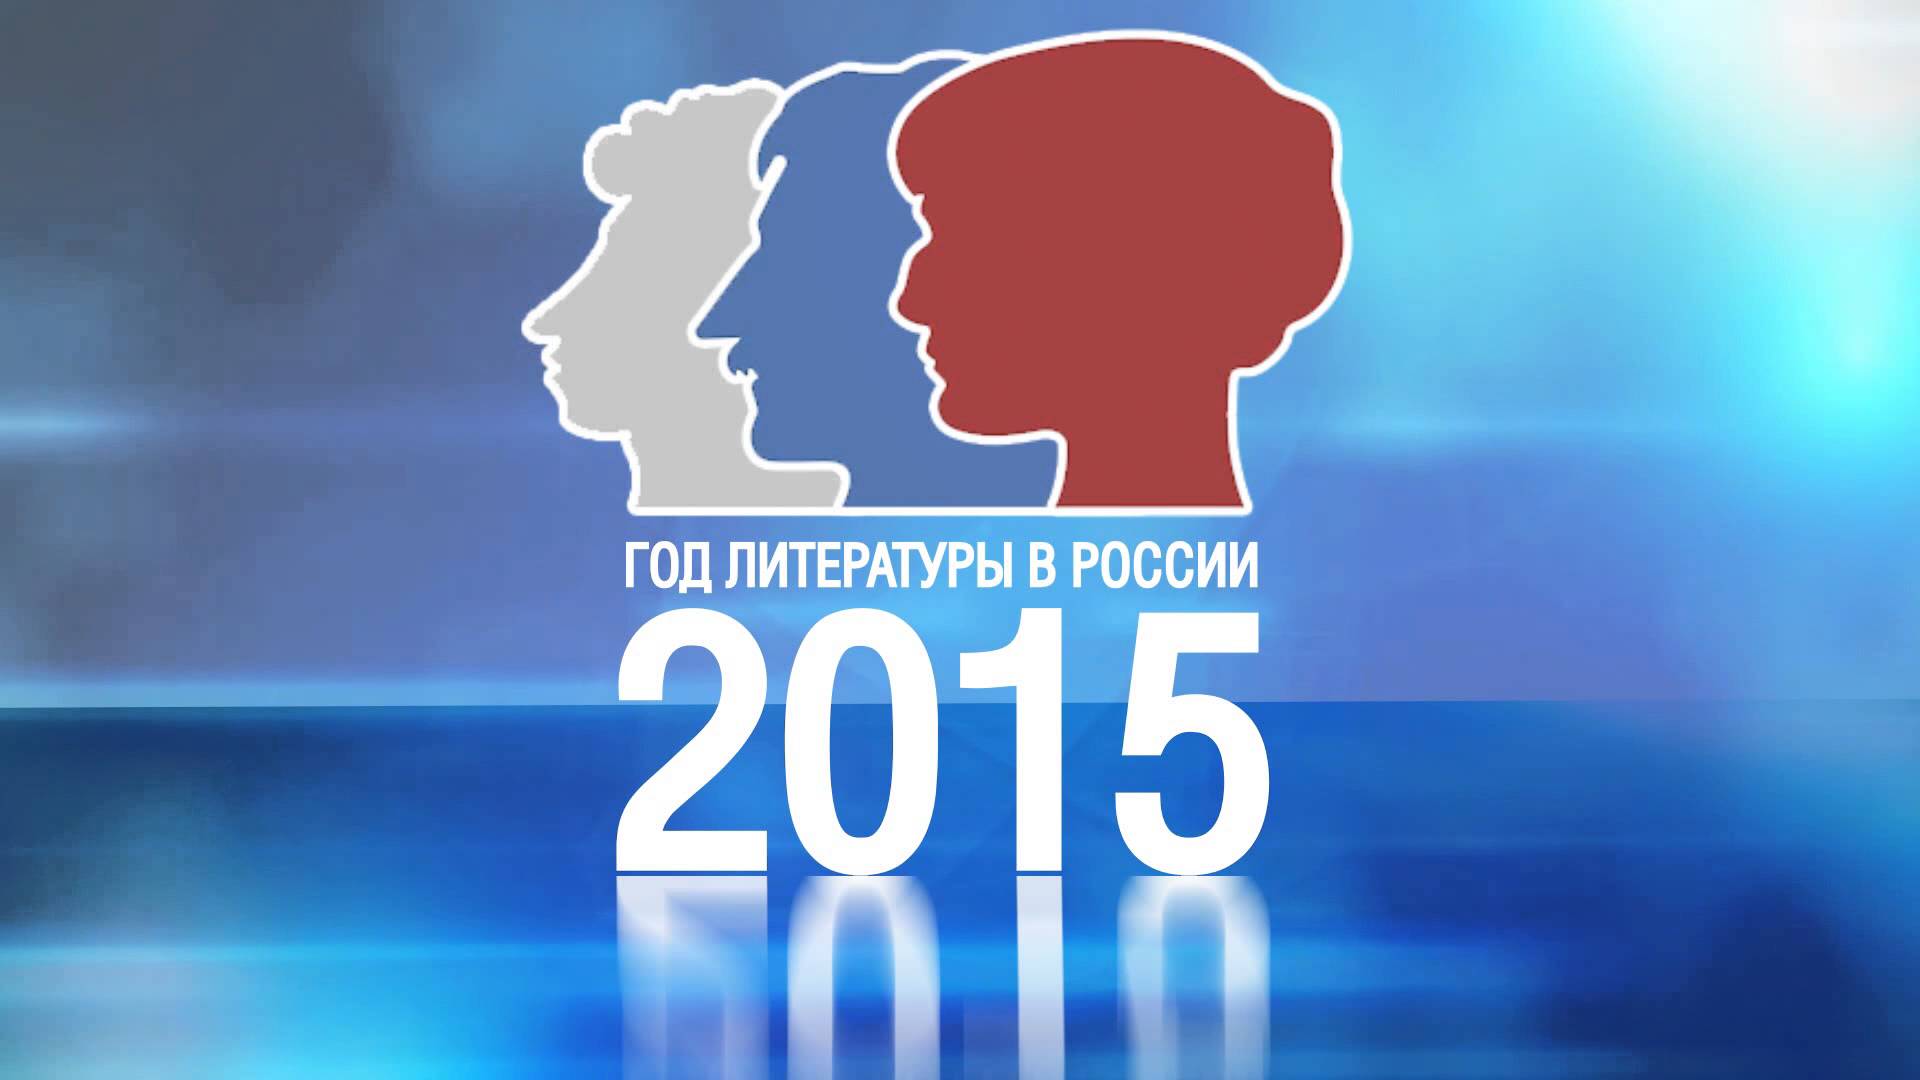 В 2015 году исполняется. Год литературы в России. Год литературы 2015. Год литературы в России 2015. Год литературы логотип.